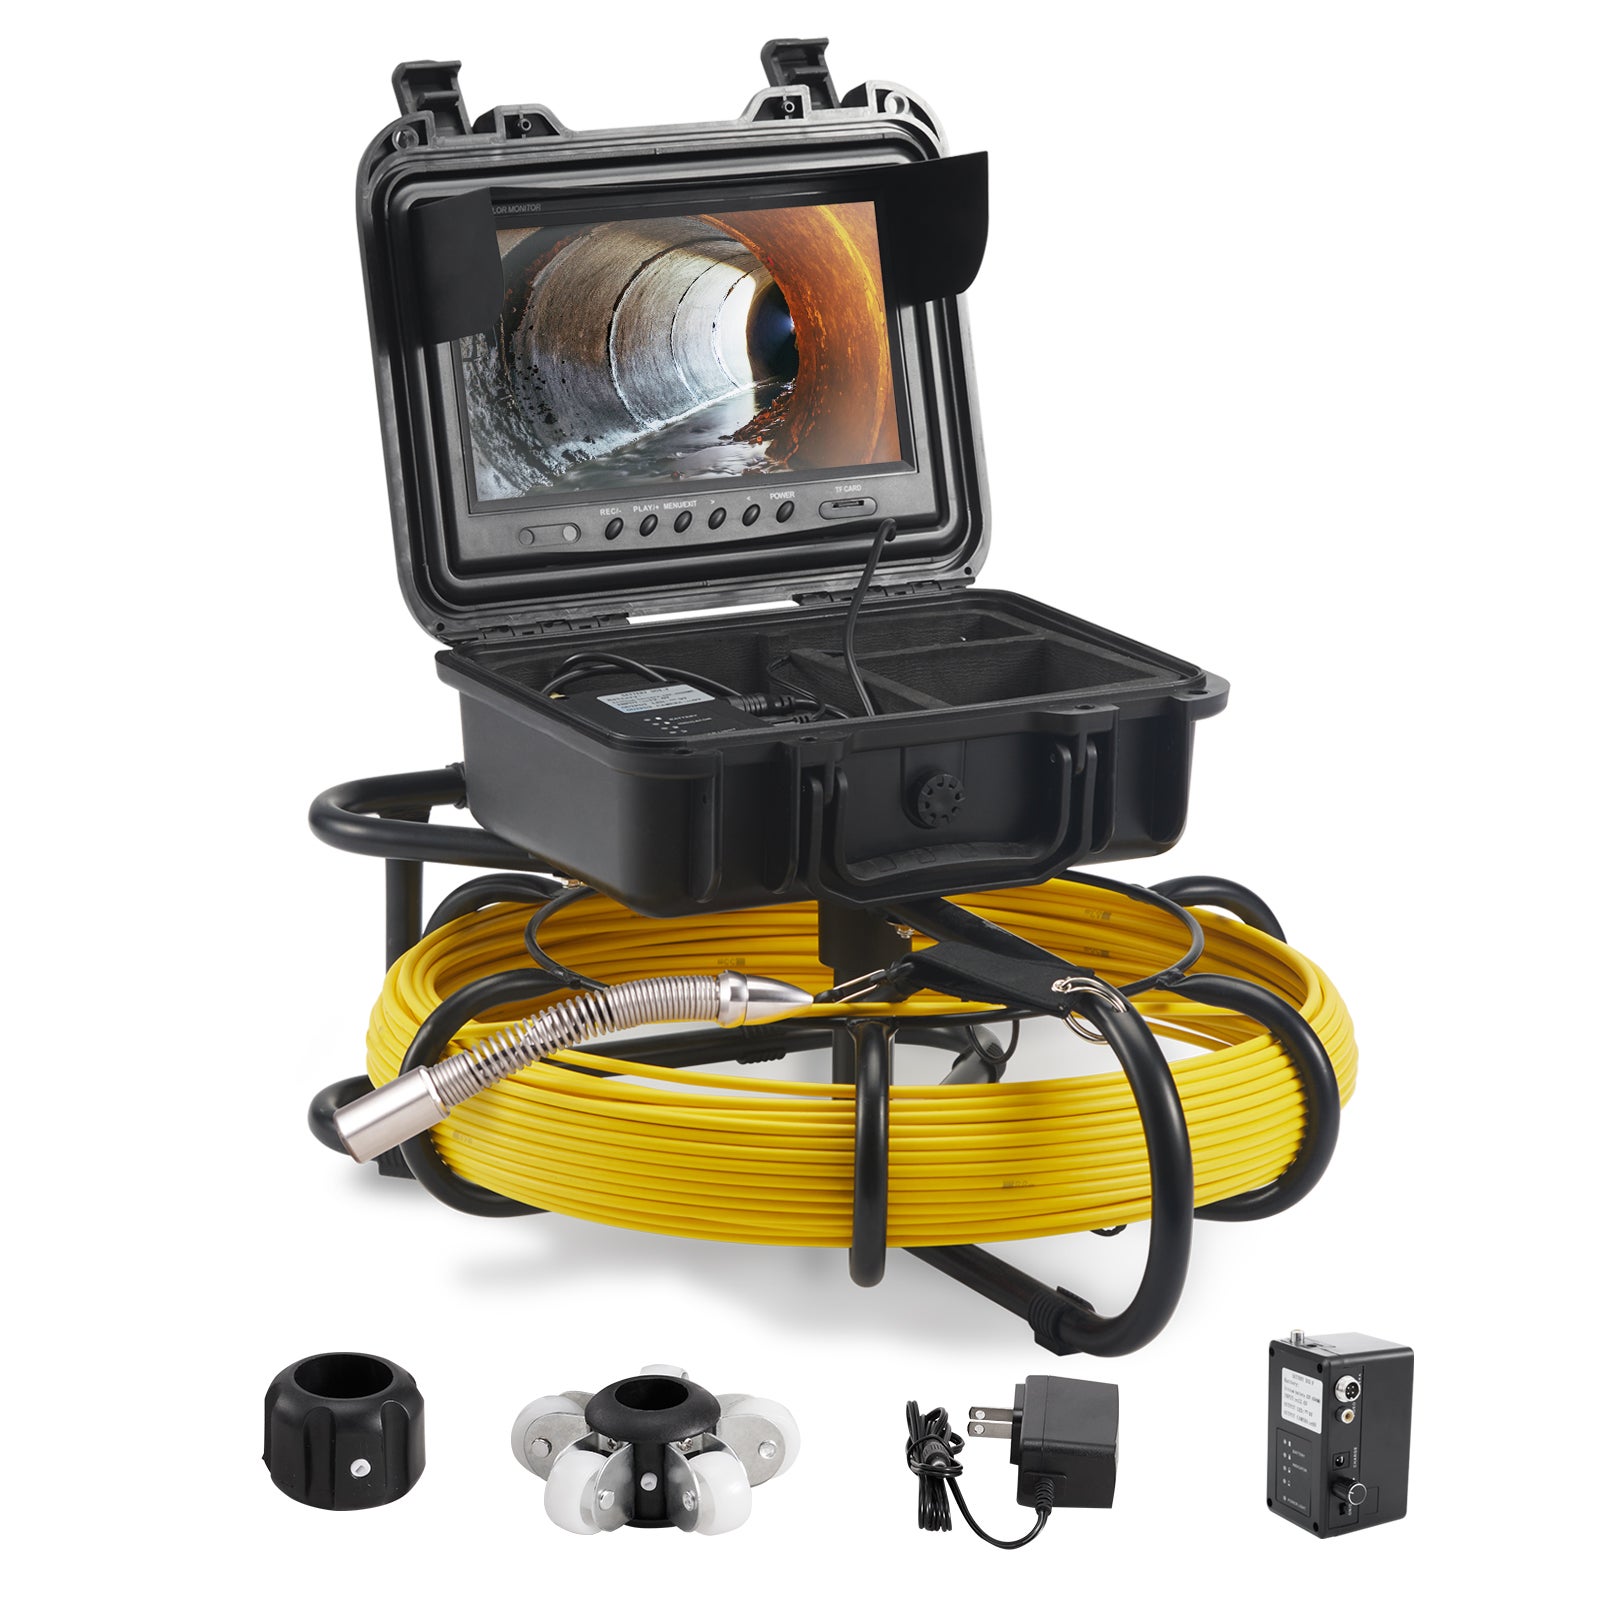 Caméra endoscopique Steinberg Caméra inspection canalisation - 30 m - 12  LED - Écran tactile couleur TFT 7 pouces